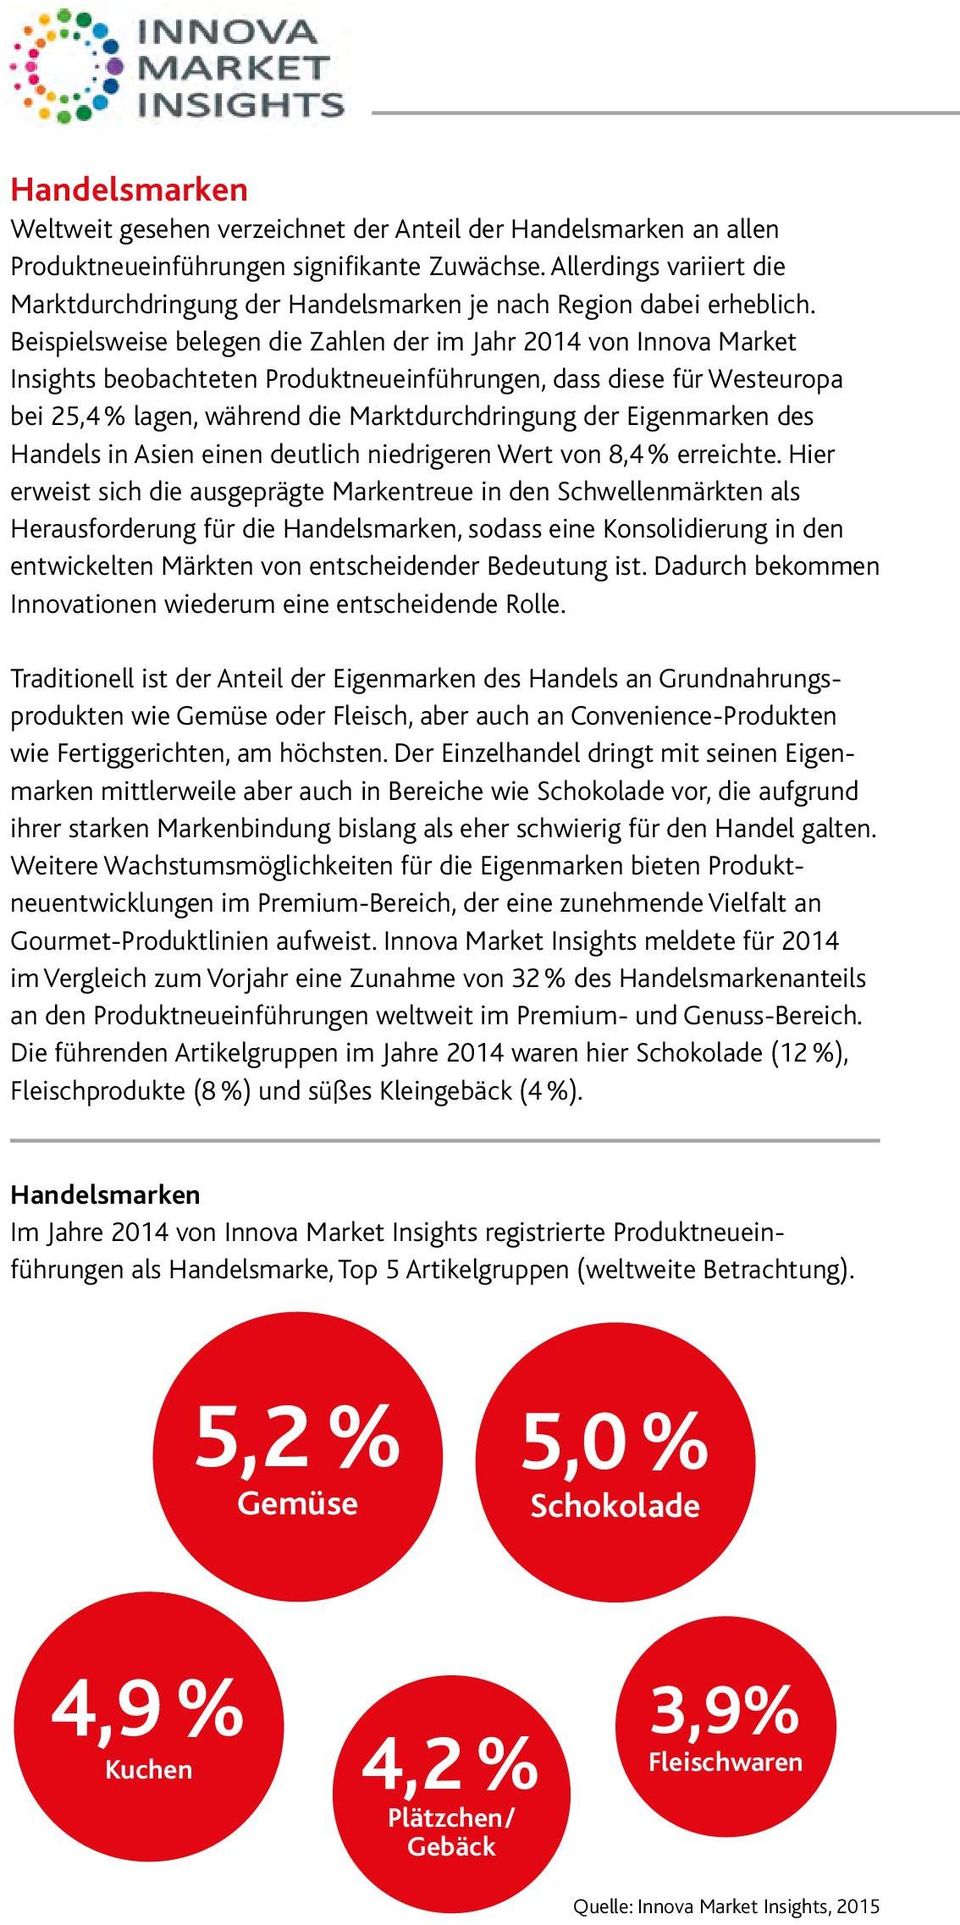 Beispielsweise belegen die Zahlen der im Jahr 2014 von Innova Market Insights beobachteten Produktneueinführungen, dass diese für Westeuropa bei 25,4 % lagen, während die Marktdurchdringung der